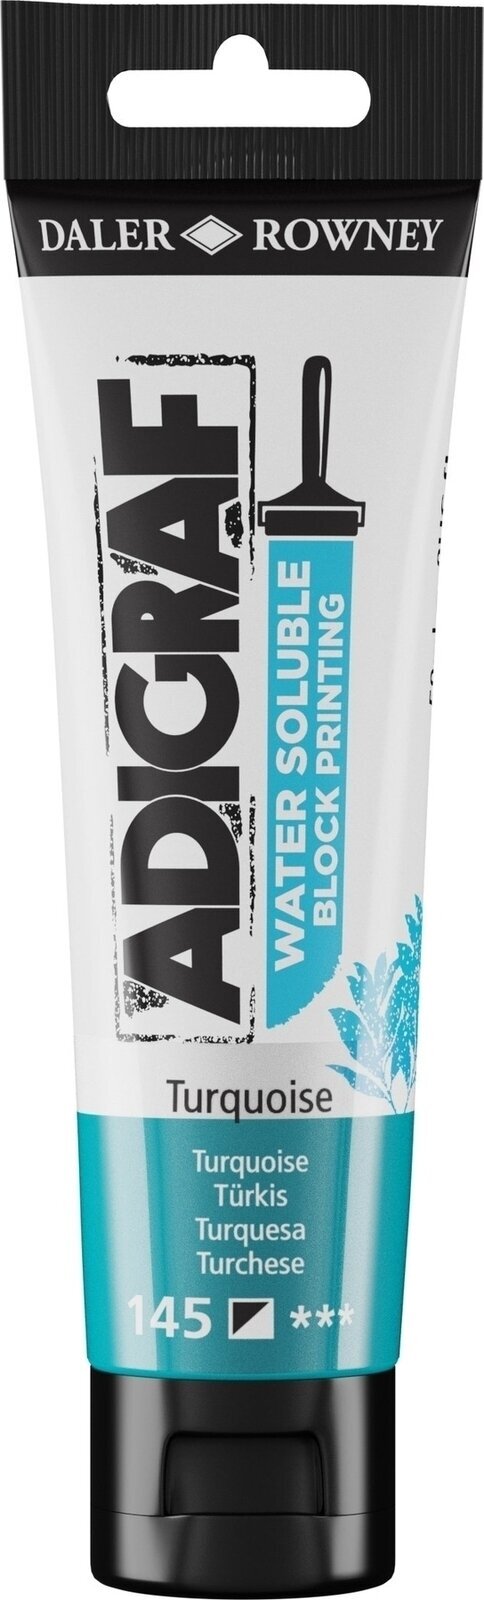 Χρώμα για λινογραφία Daler Rowney Adigraf Block Printing Water Soluble Colour Χρώμα για λινογραφία Turquoise 59 ml